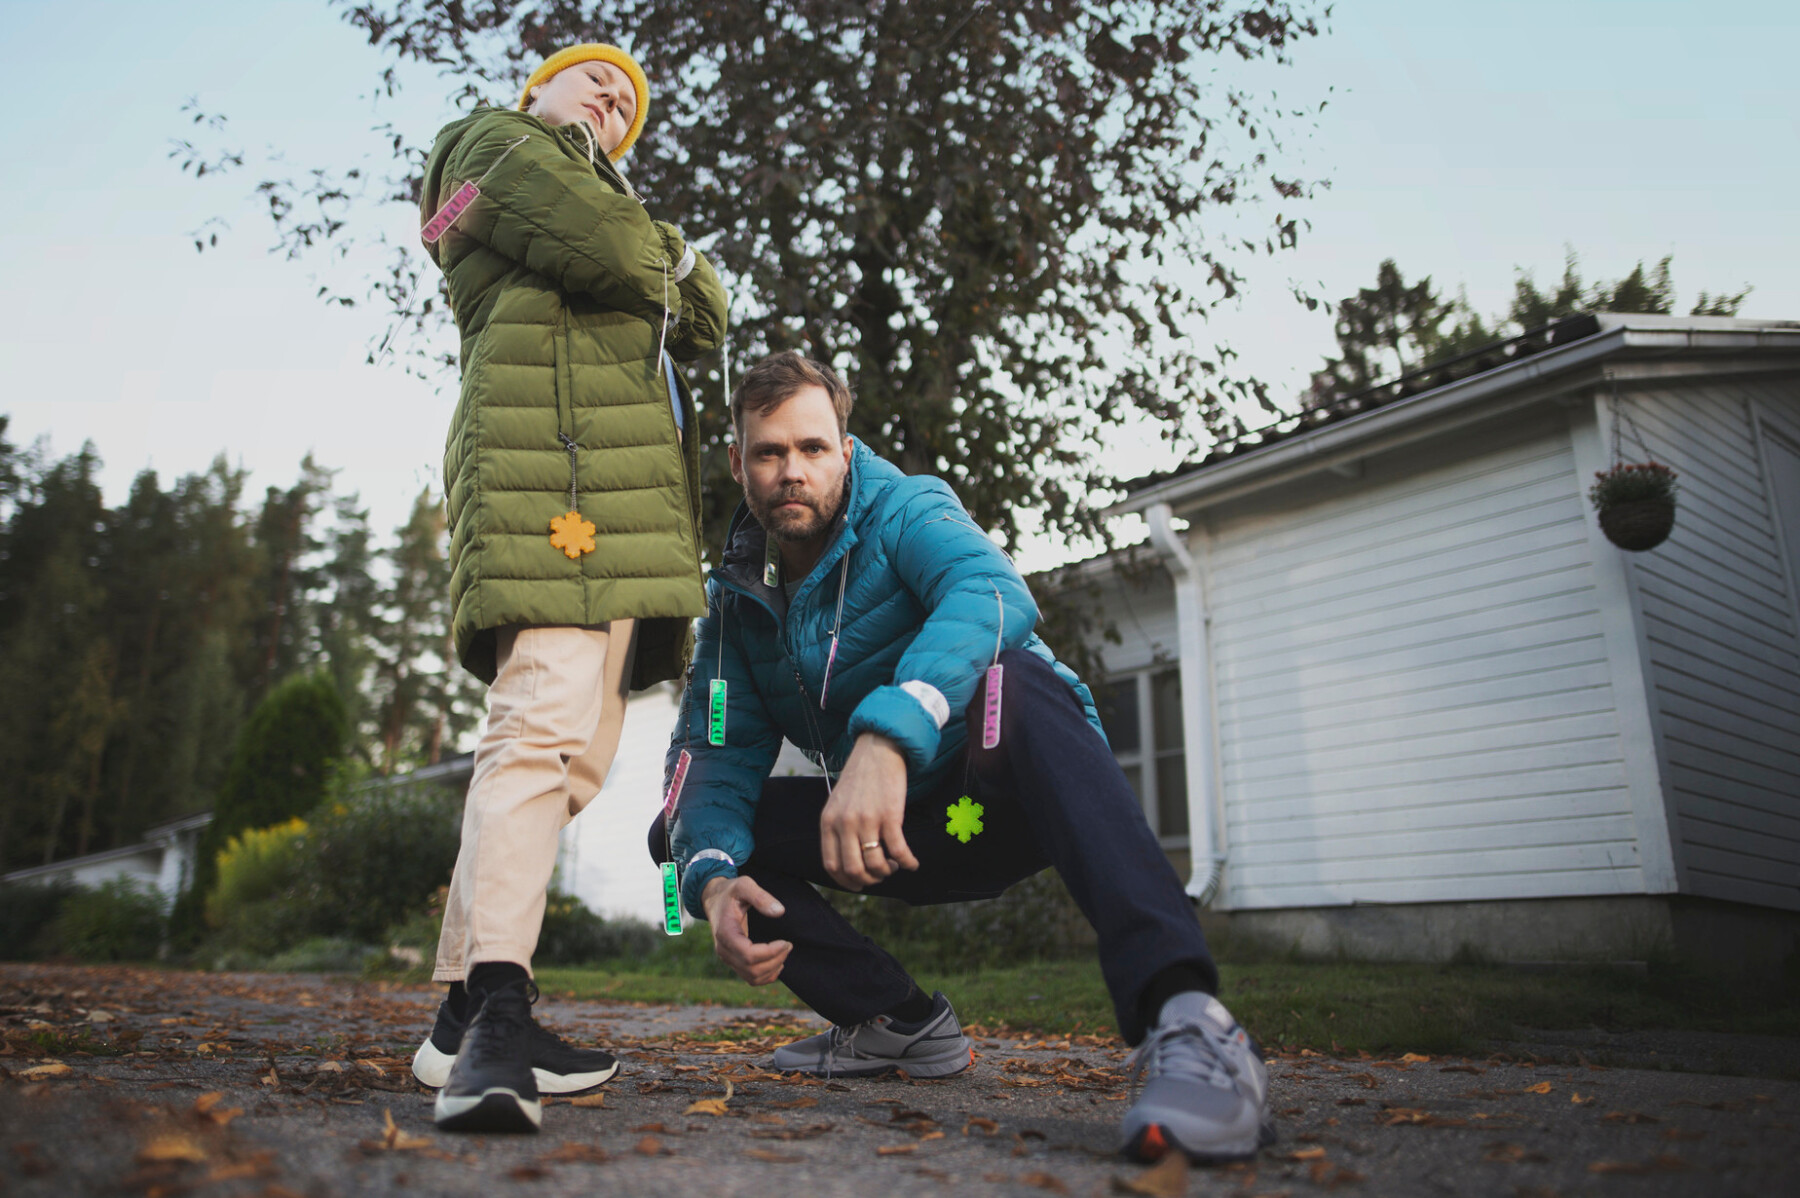 Un hombre y un niño ataviados con abrigos de invierno a los que llevan prendidos varios reflectores de plástico, posan para la cámara en el patio de una casa.